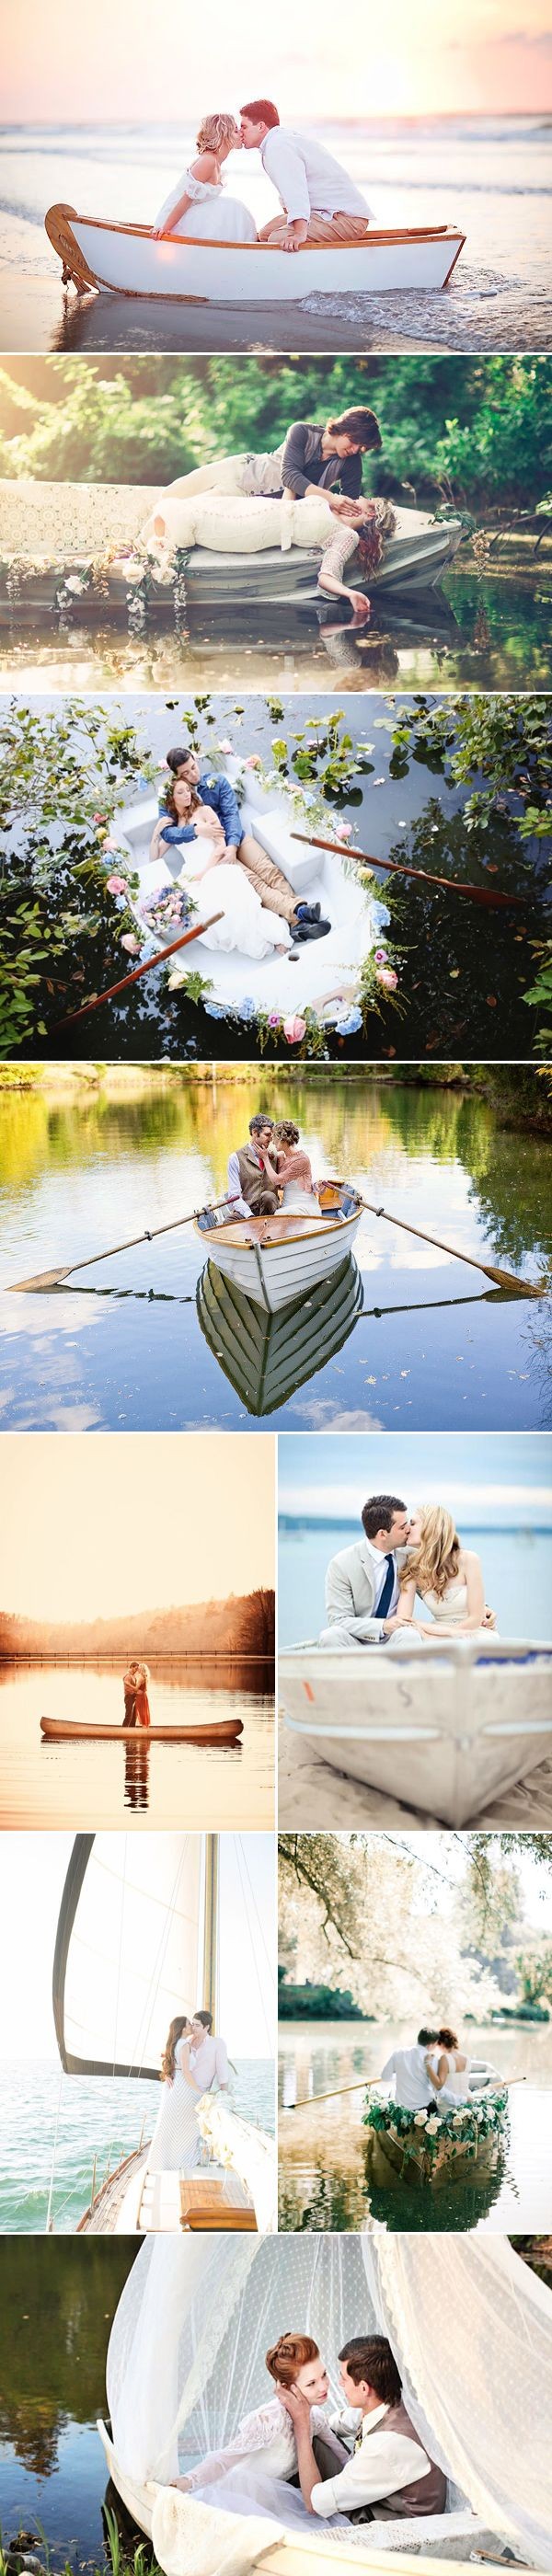 Romantic Love-Boat Engagement Photo Ideas - Praise...